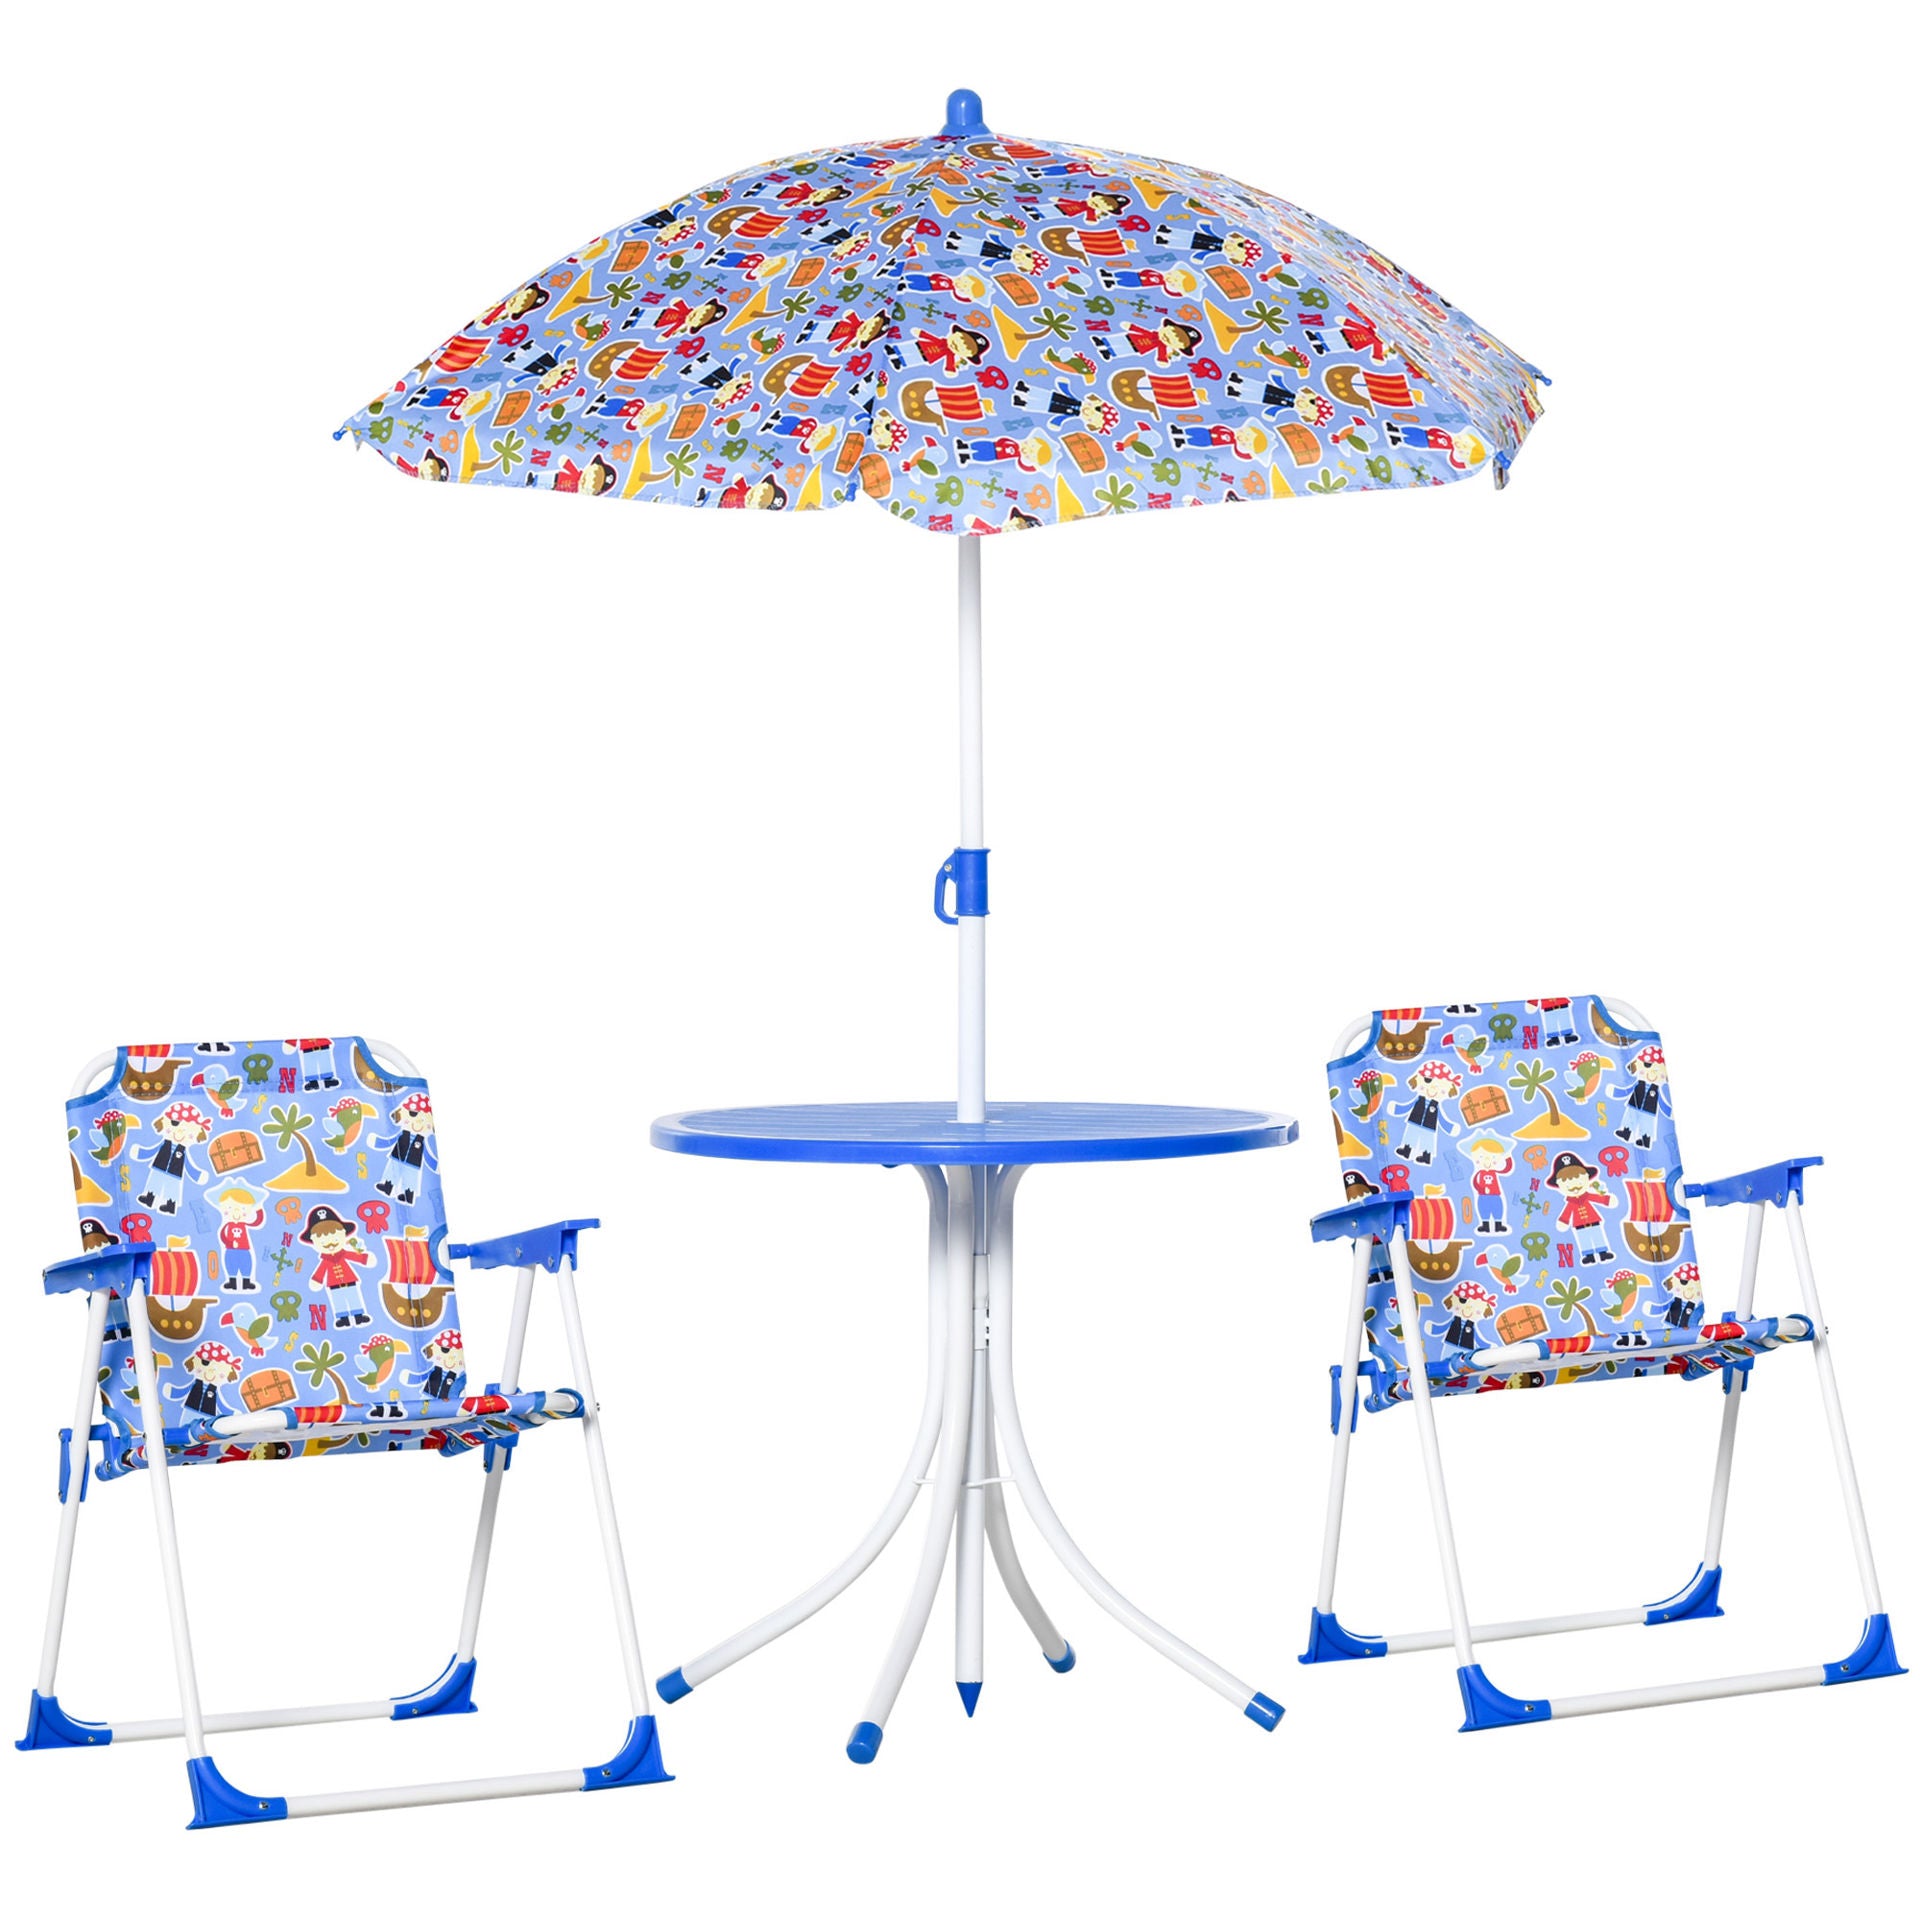 Ensemble enfant 4 pièces Nancy's Jalacte table de jardin 2 chaises pliantes parasol camping ensemble de siège enfant salon de jardin pour 3-5 ans bleu